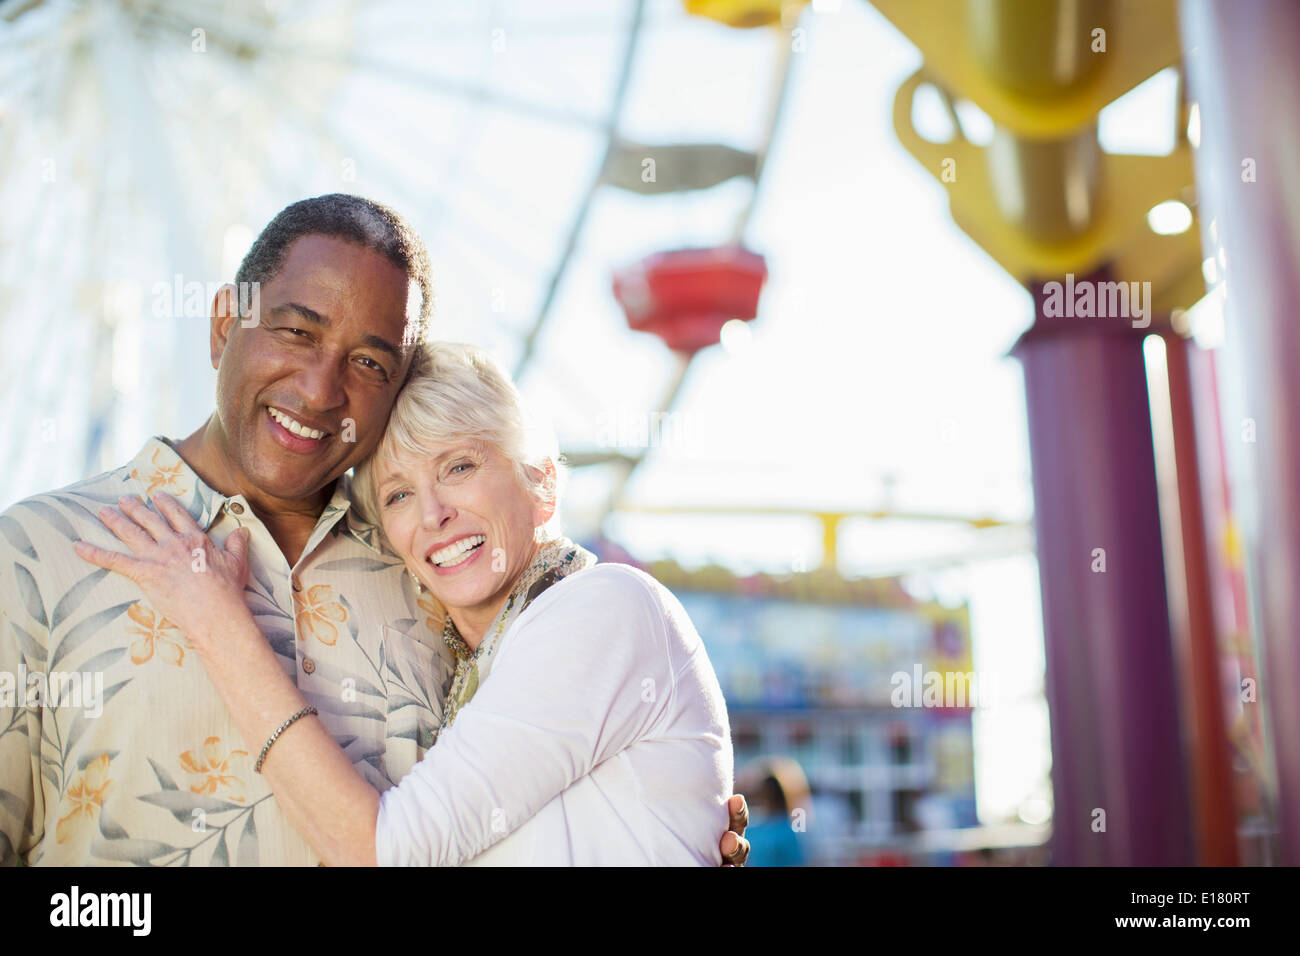 Portrait of smiling senior couple at amusement park Banque D'Images